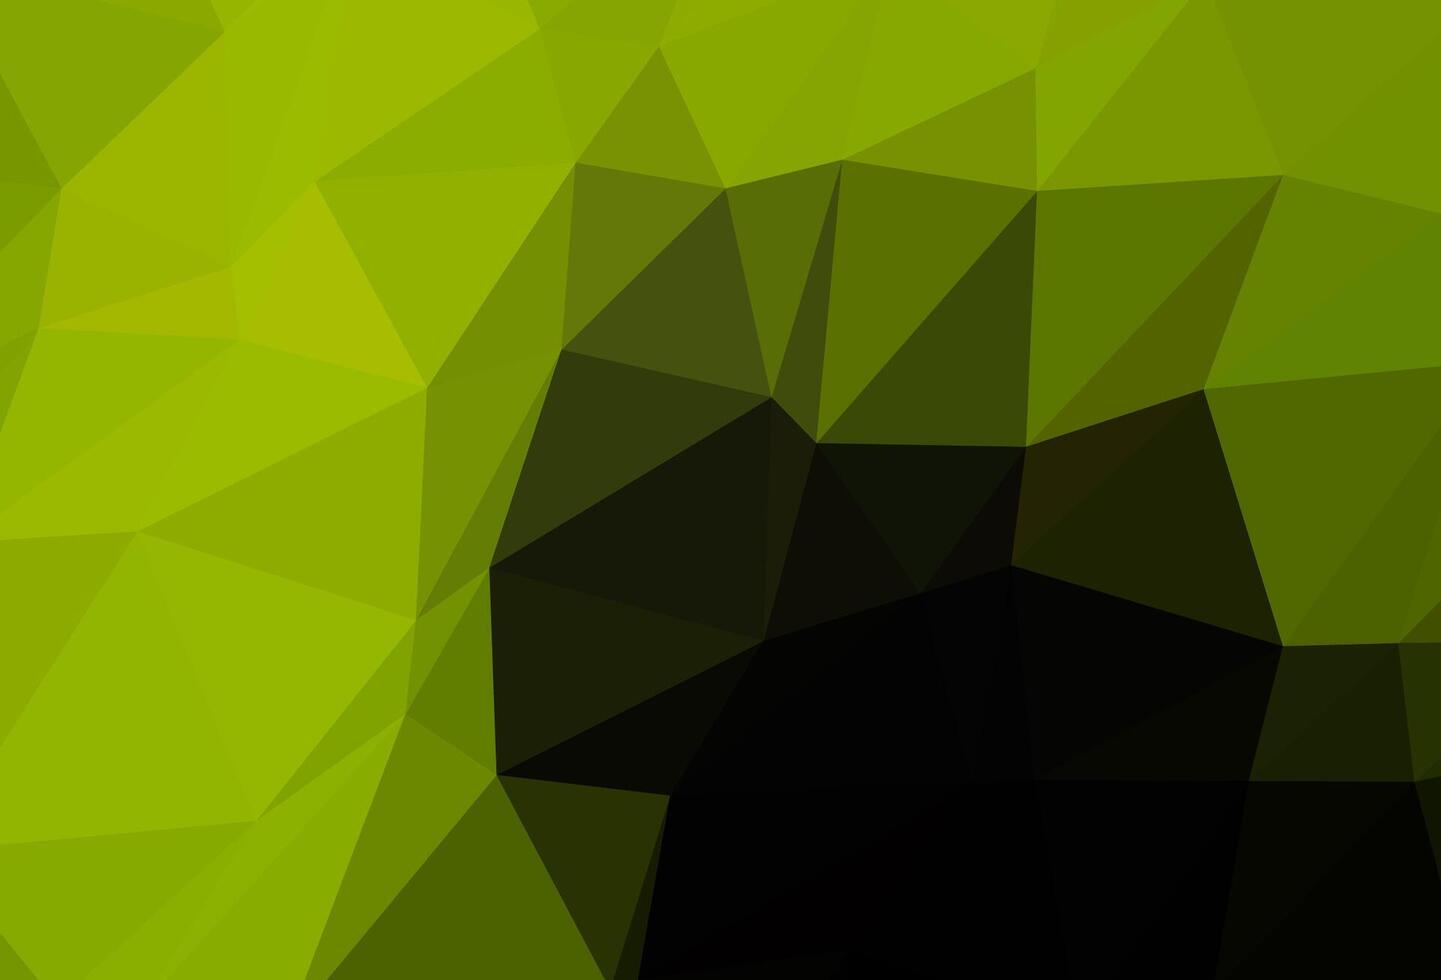 modelo poligonal de vetor verde escuro, amarelo.